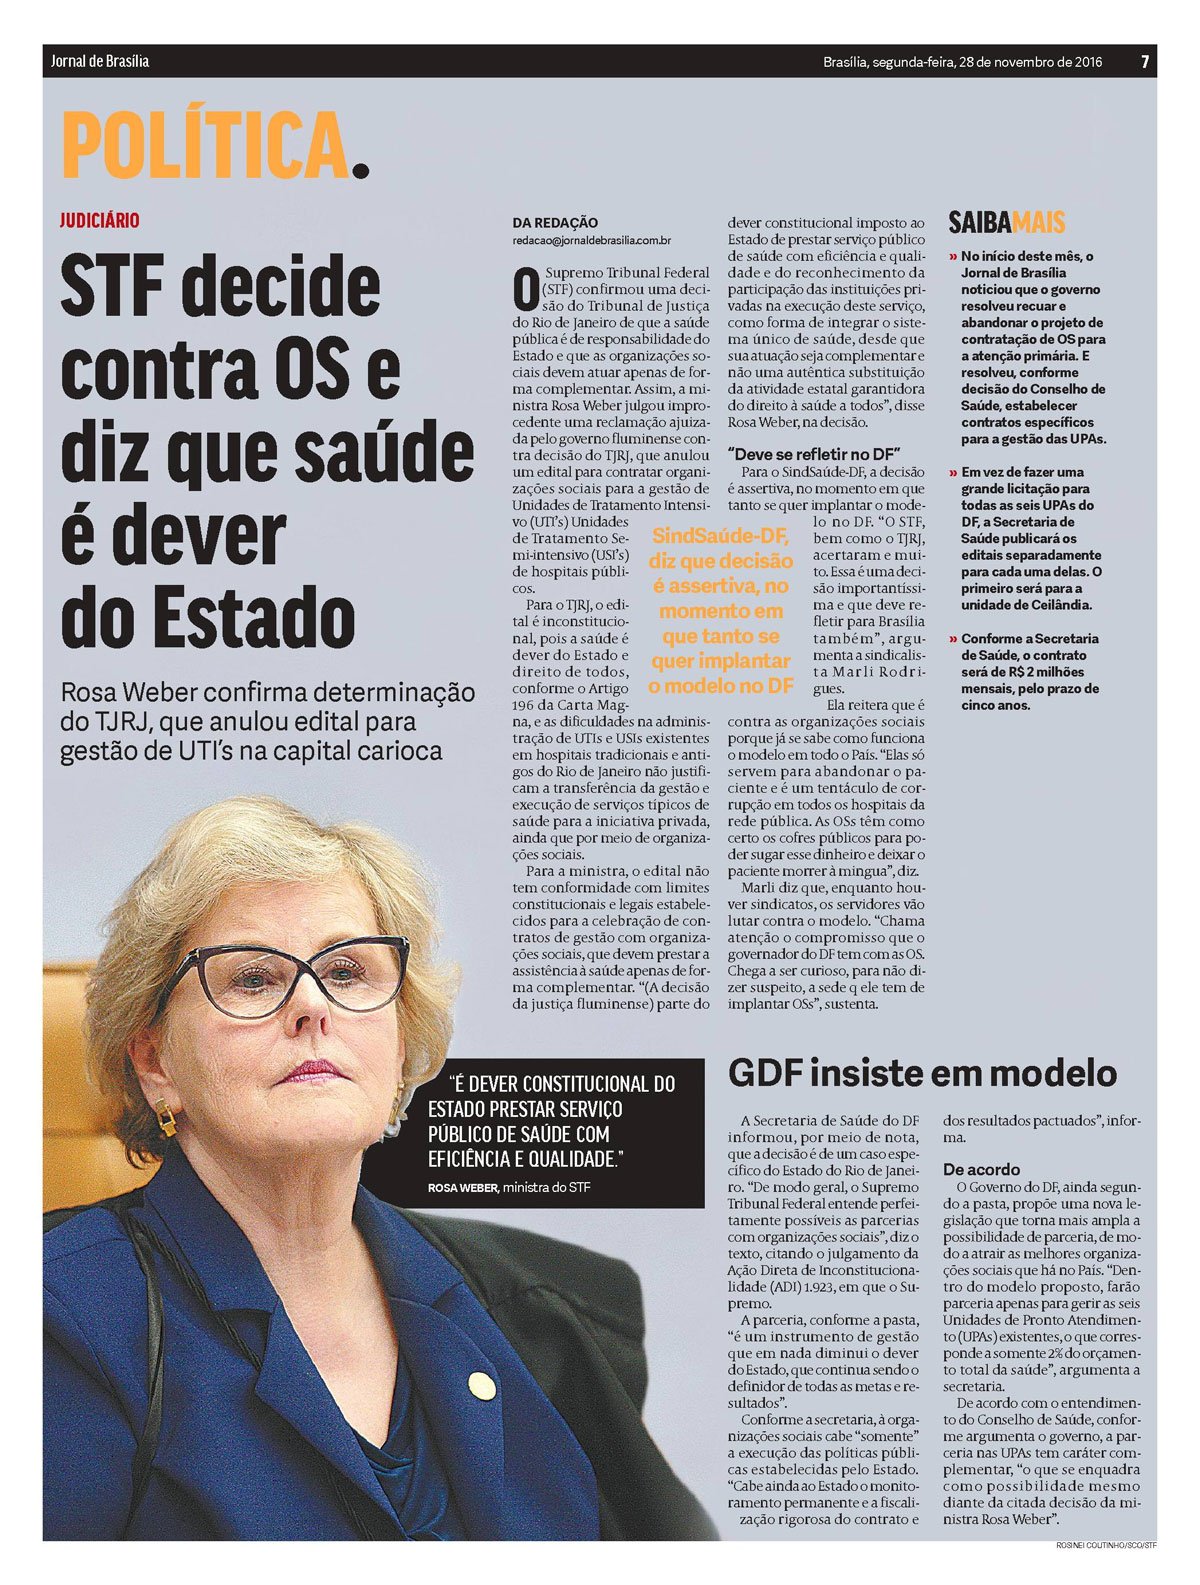 Fonte: Jornal de Brasília